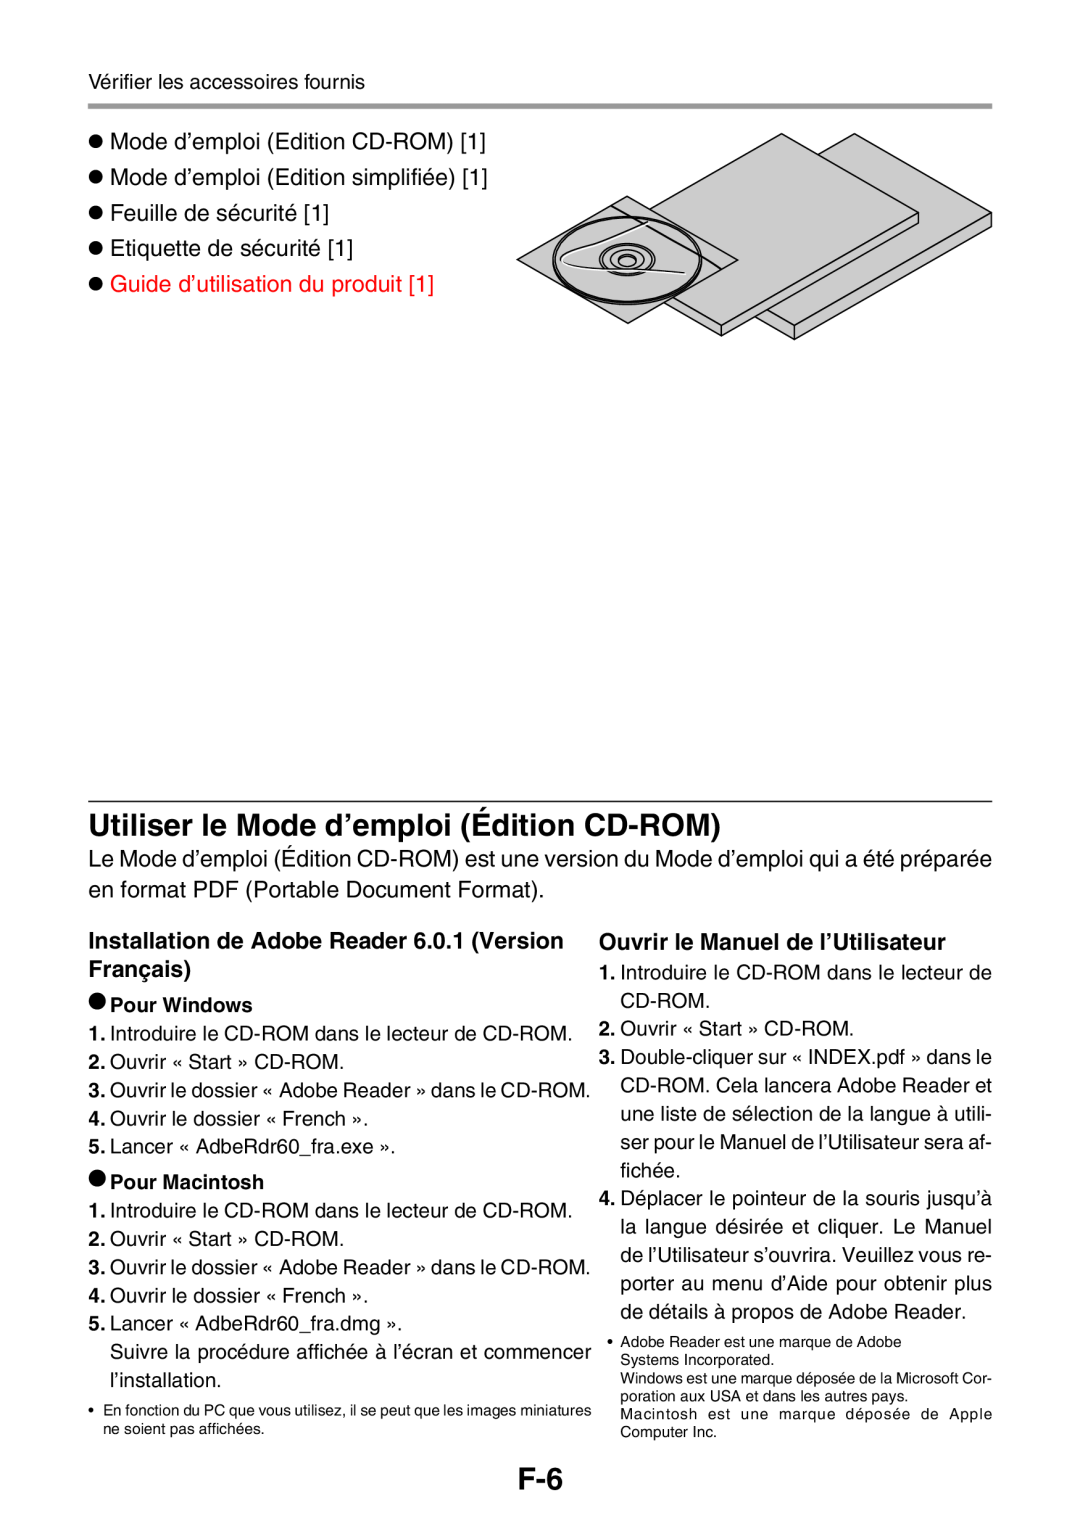 3M PX5 user manual Utiliser le Mode d’emploi Édition CD-ROM, Mode d’emploi Edition CD-ROM Mode d’emploi Edition simplifiée 